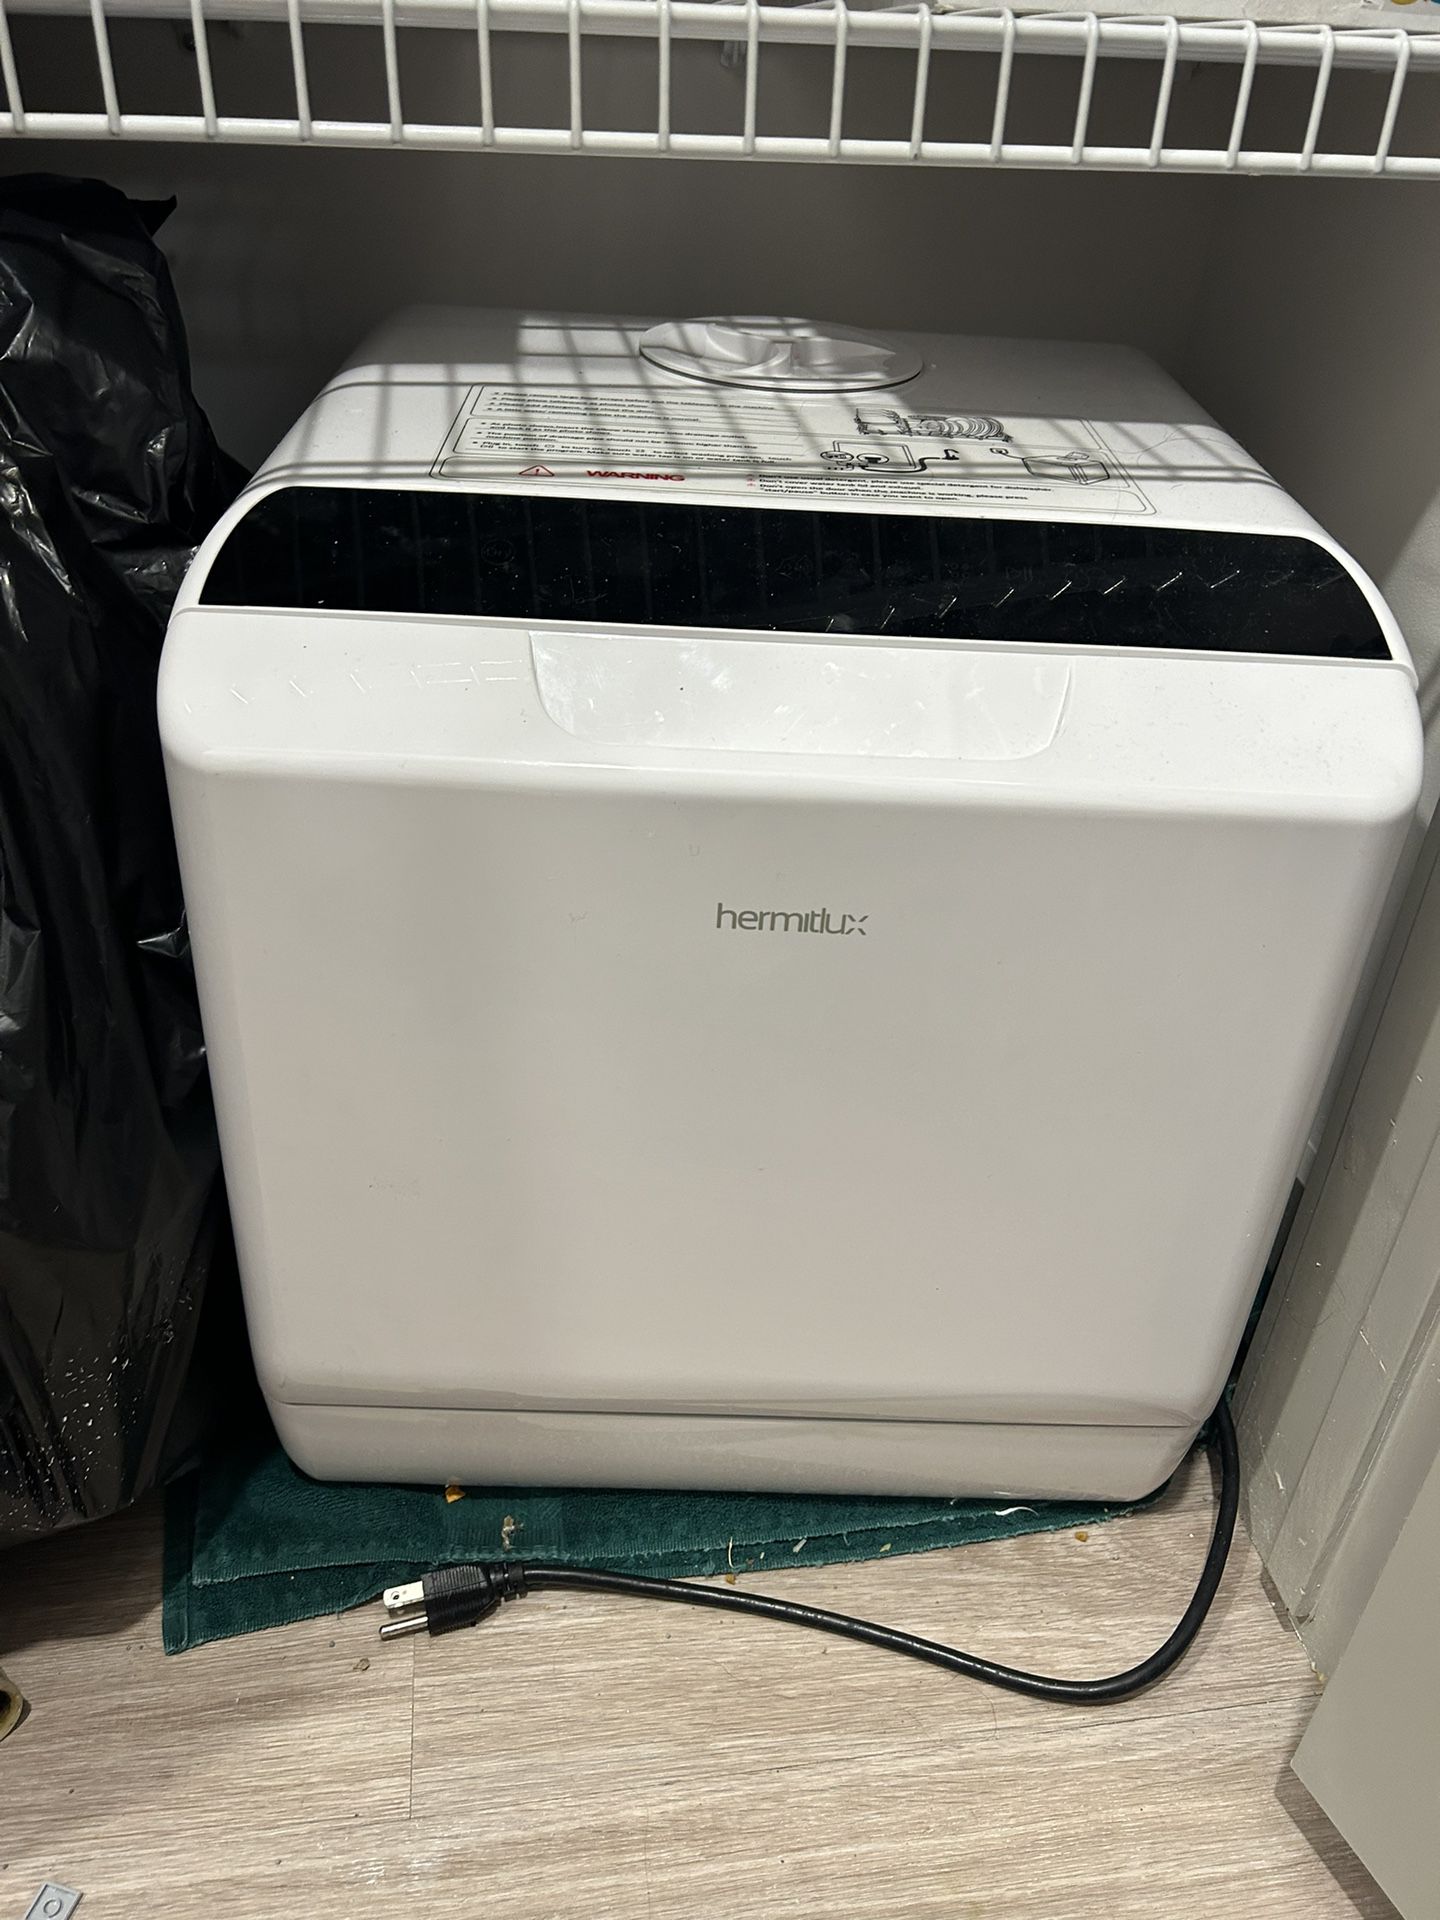 Hermitlux Portable Dishwasher